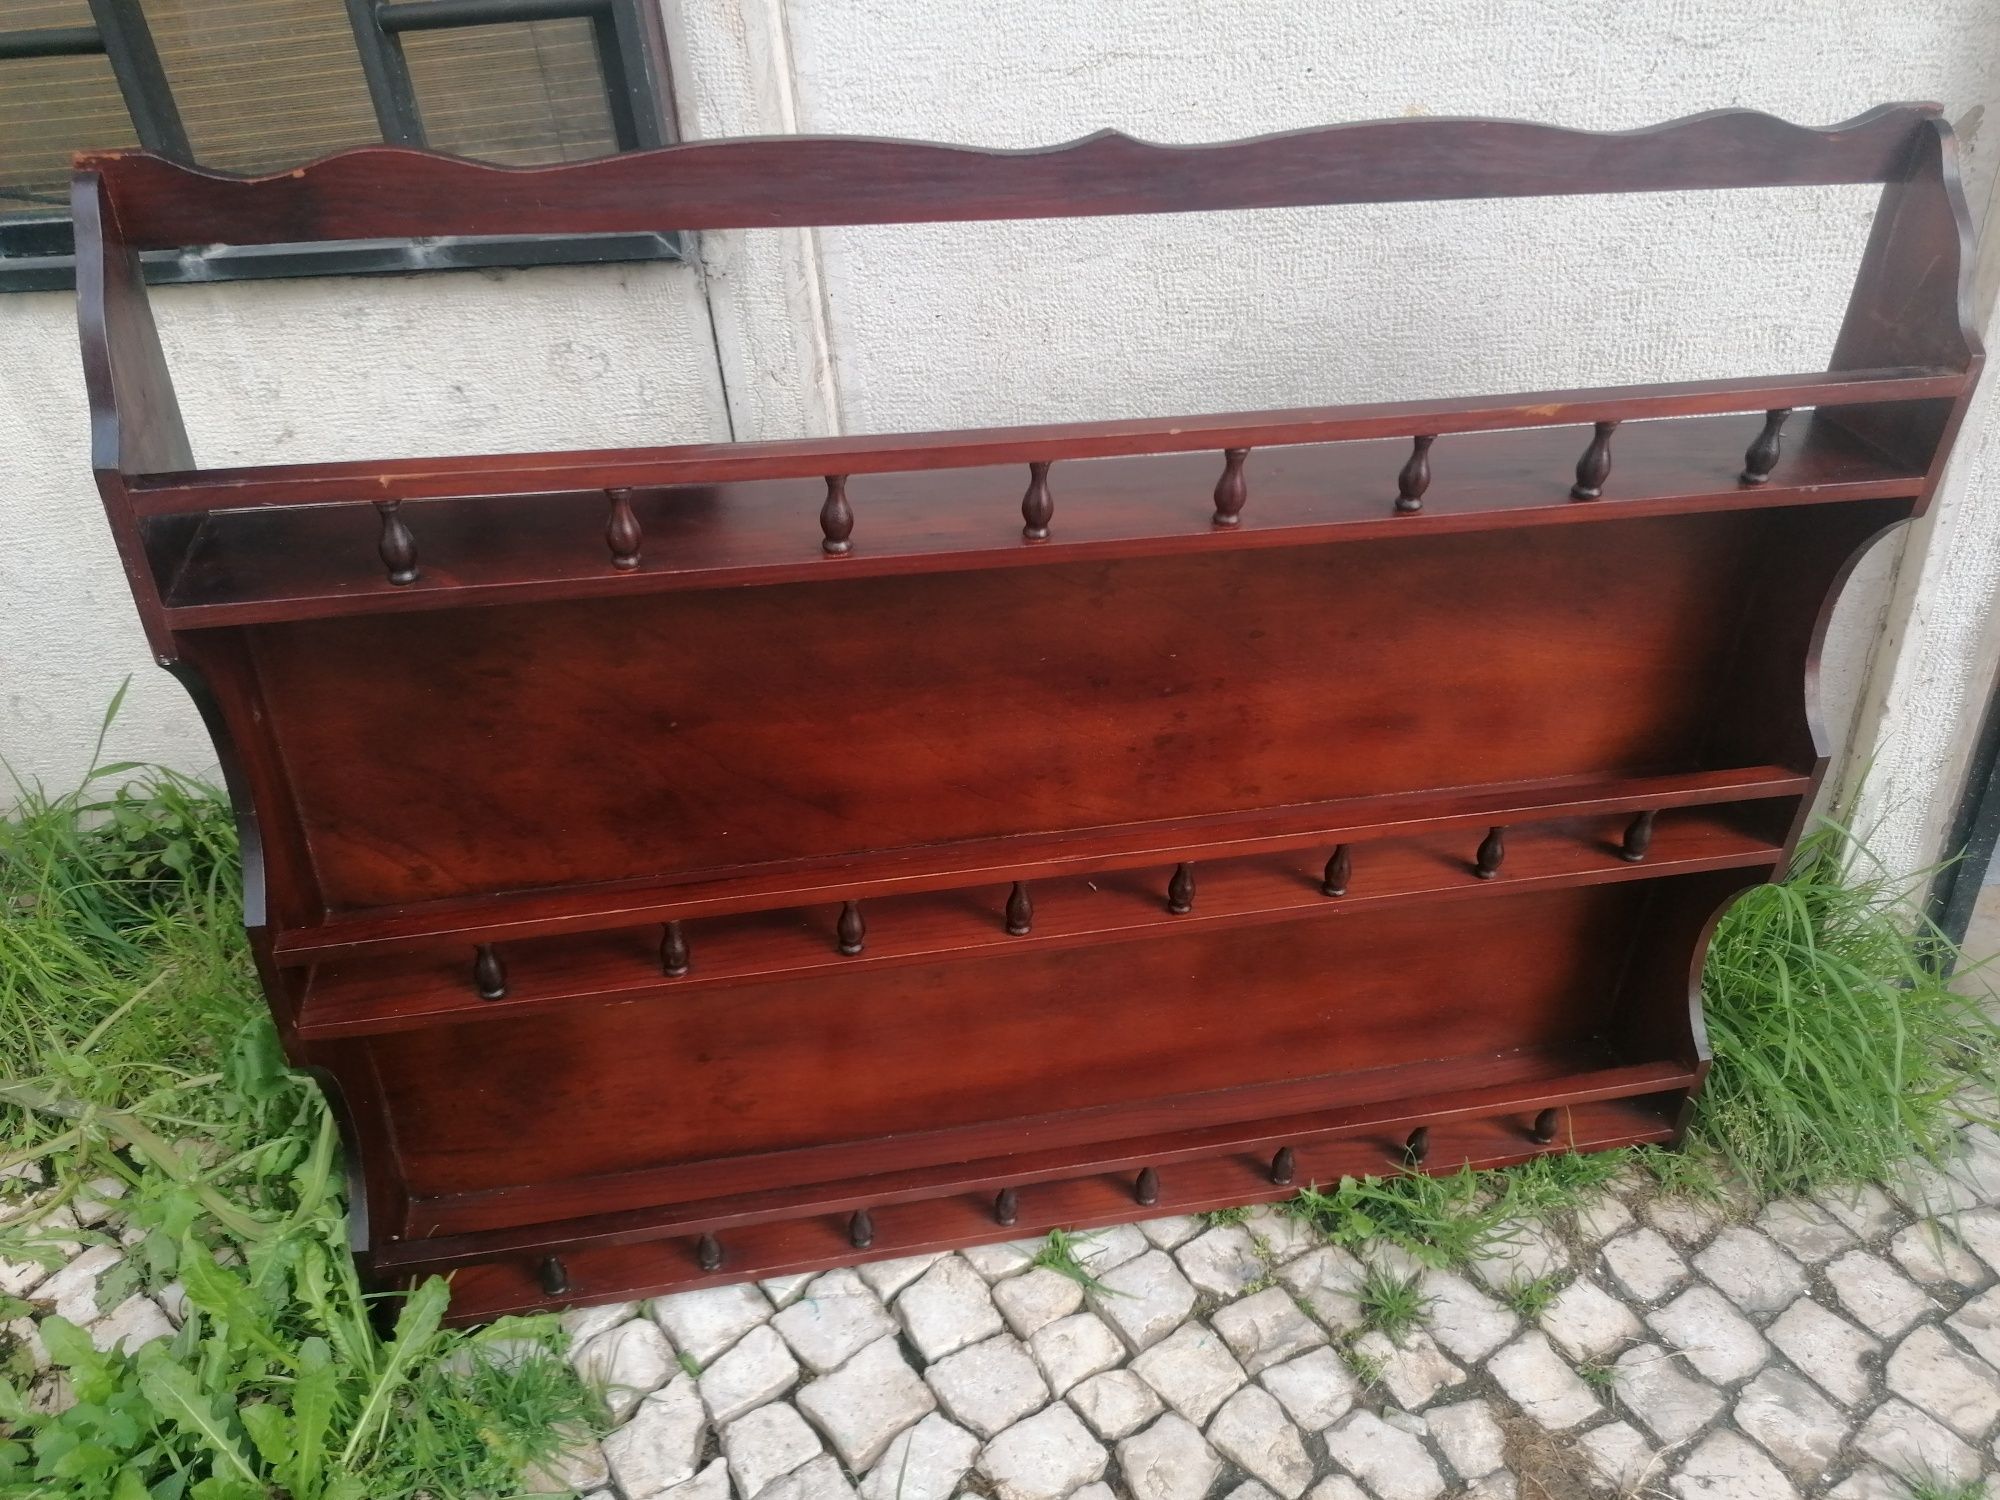 Escaparate em madeira maciça (73x93cm)

A levantar em Lisboa, São Vice